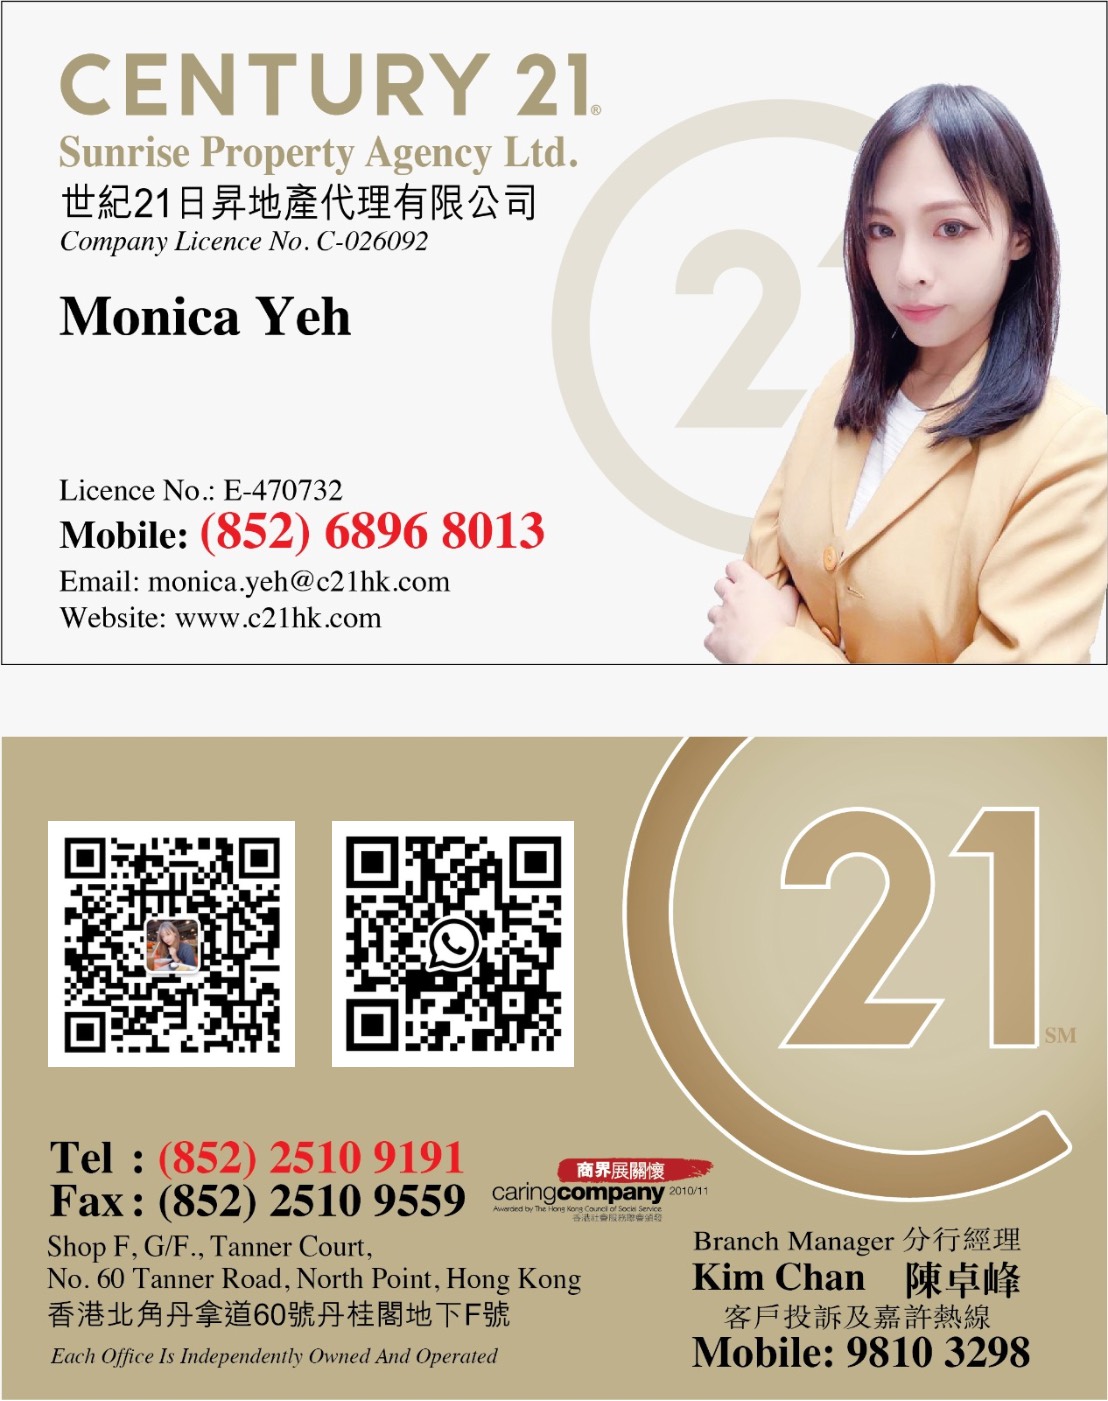 Estate Agent Company Estate Agent Hottest (Top4) 北角荀盤 @ Hong Kong Estate Agent Platform